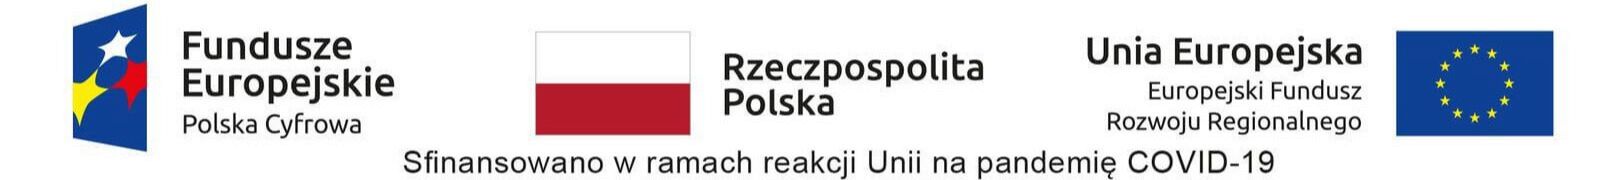 Logo Funduszy Europejskich, Flaga Polski, Flaga Unii Europejskiej